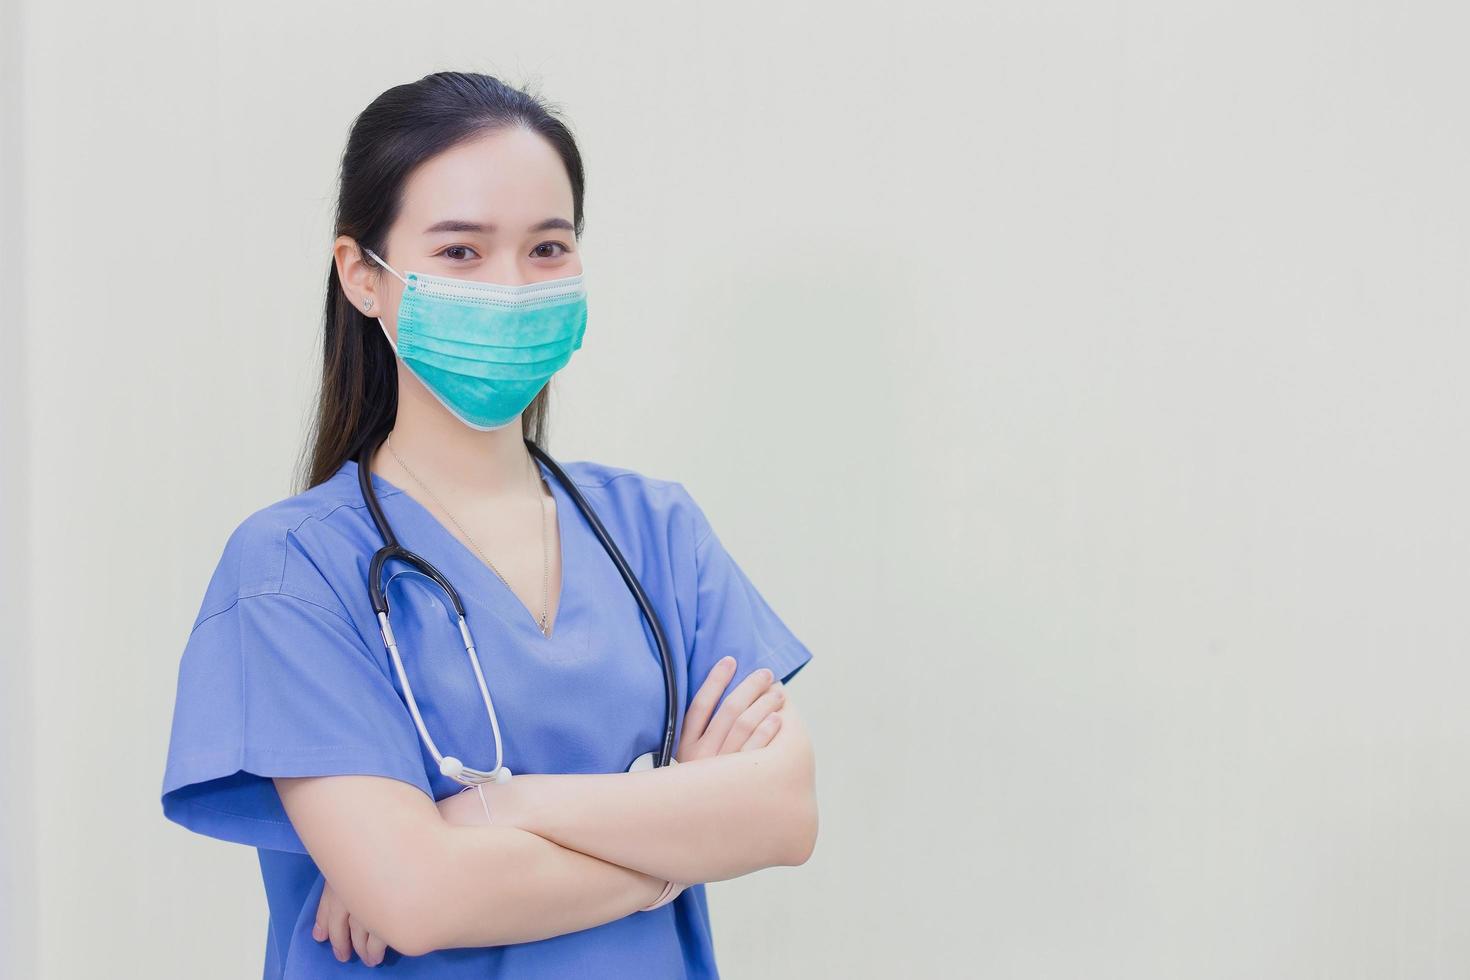 médica asiática usa uniforme médico com estetoscópio e máscara facial médica, cruzando o braço em fundo branco. foto